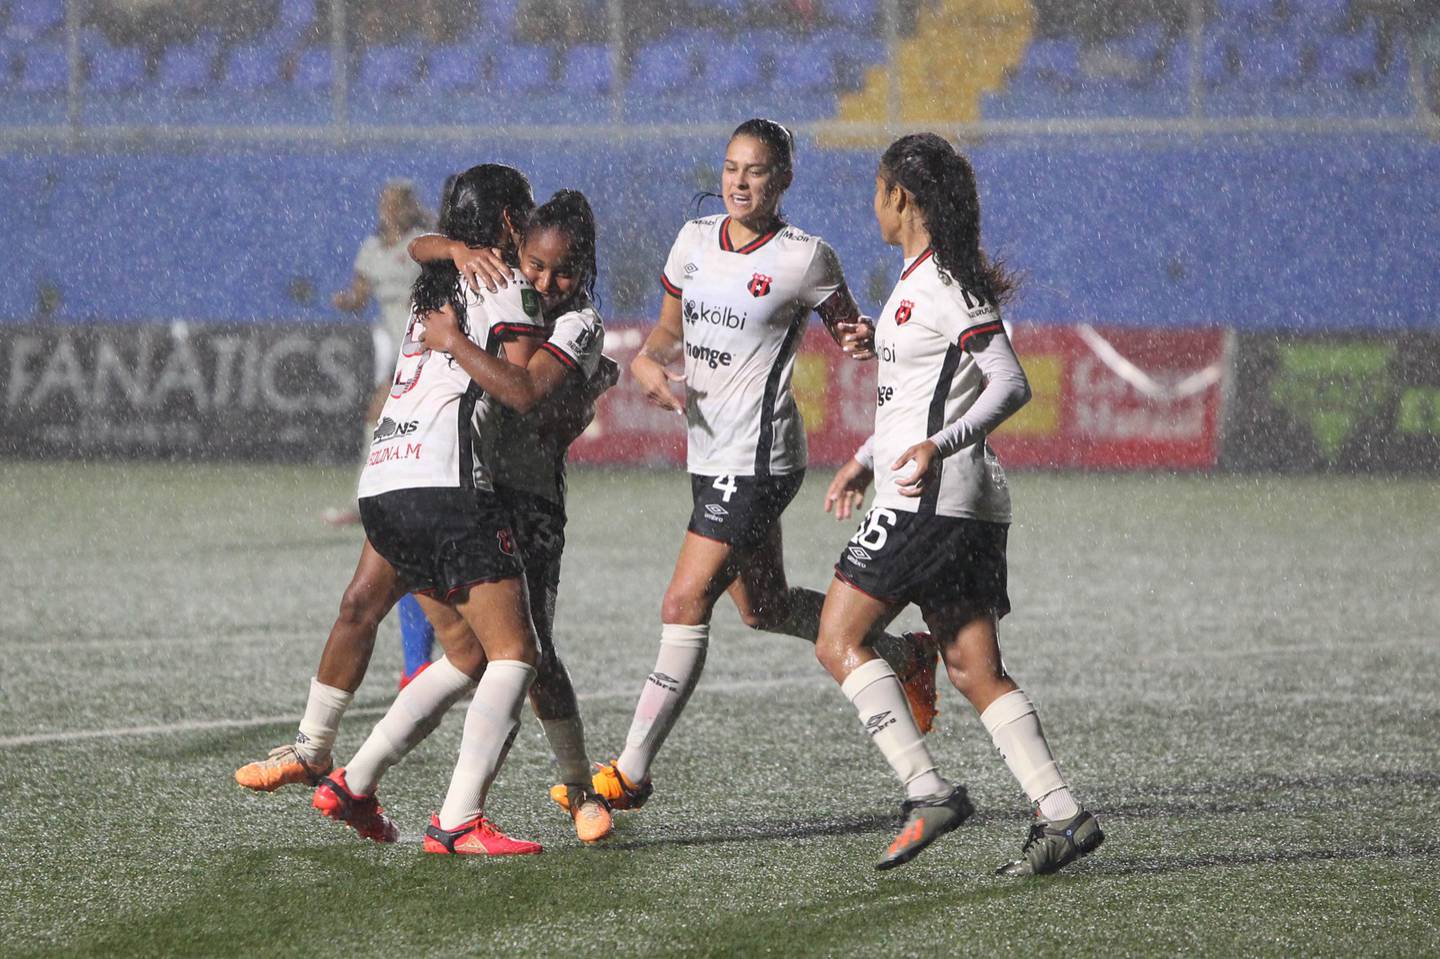 El equipo de fútbol femenino de Alajuelense seguirá jugando sus partidos de visita con camisa blanca y la pantaloneta negra.